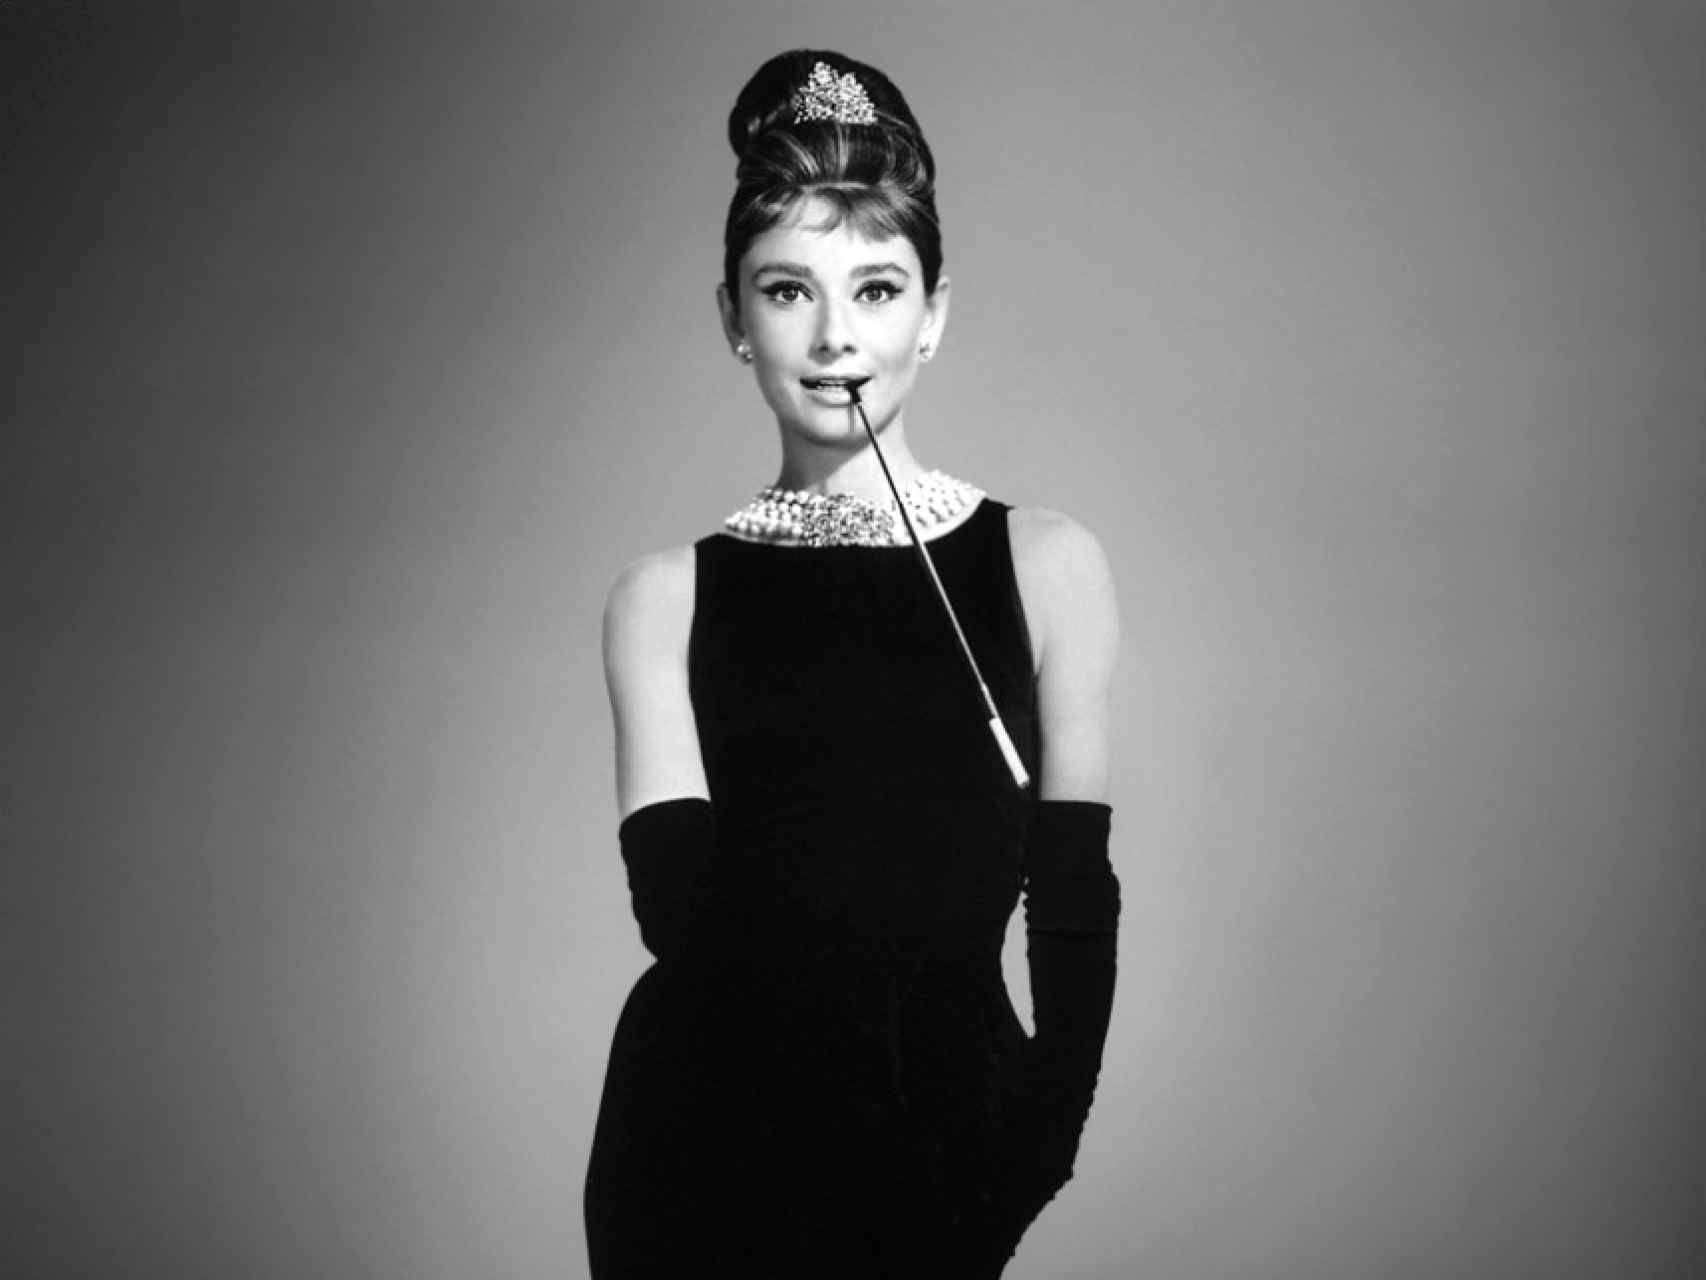 Adiós a Givenchy, el diseñador que convirtió a Audrey Hepburn en una estrella.